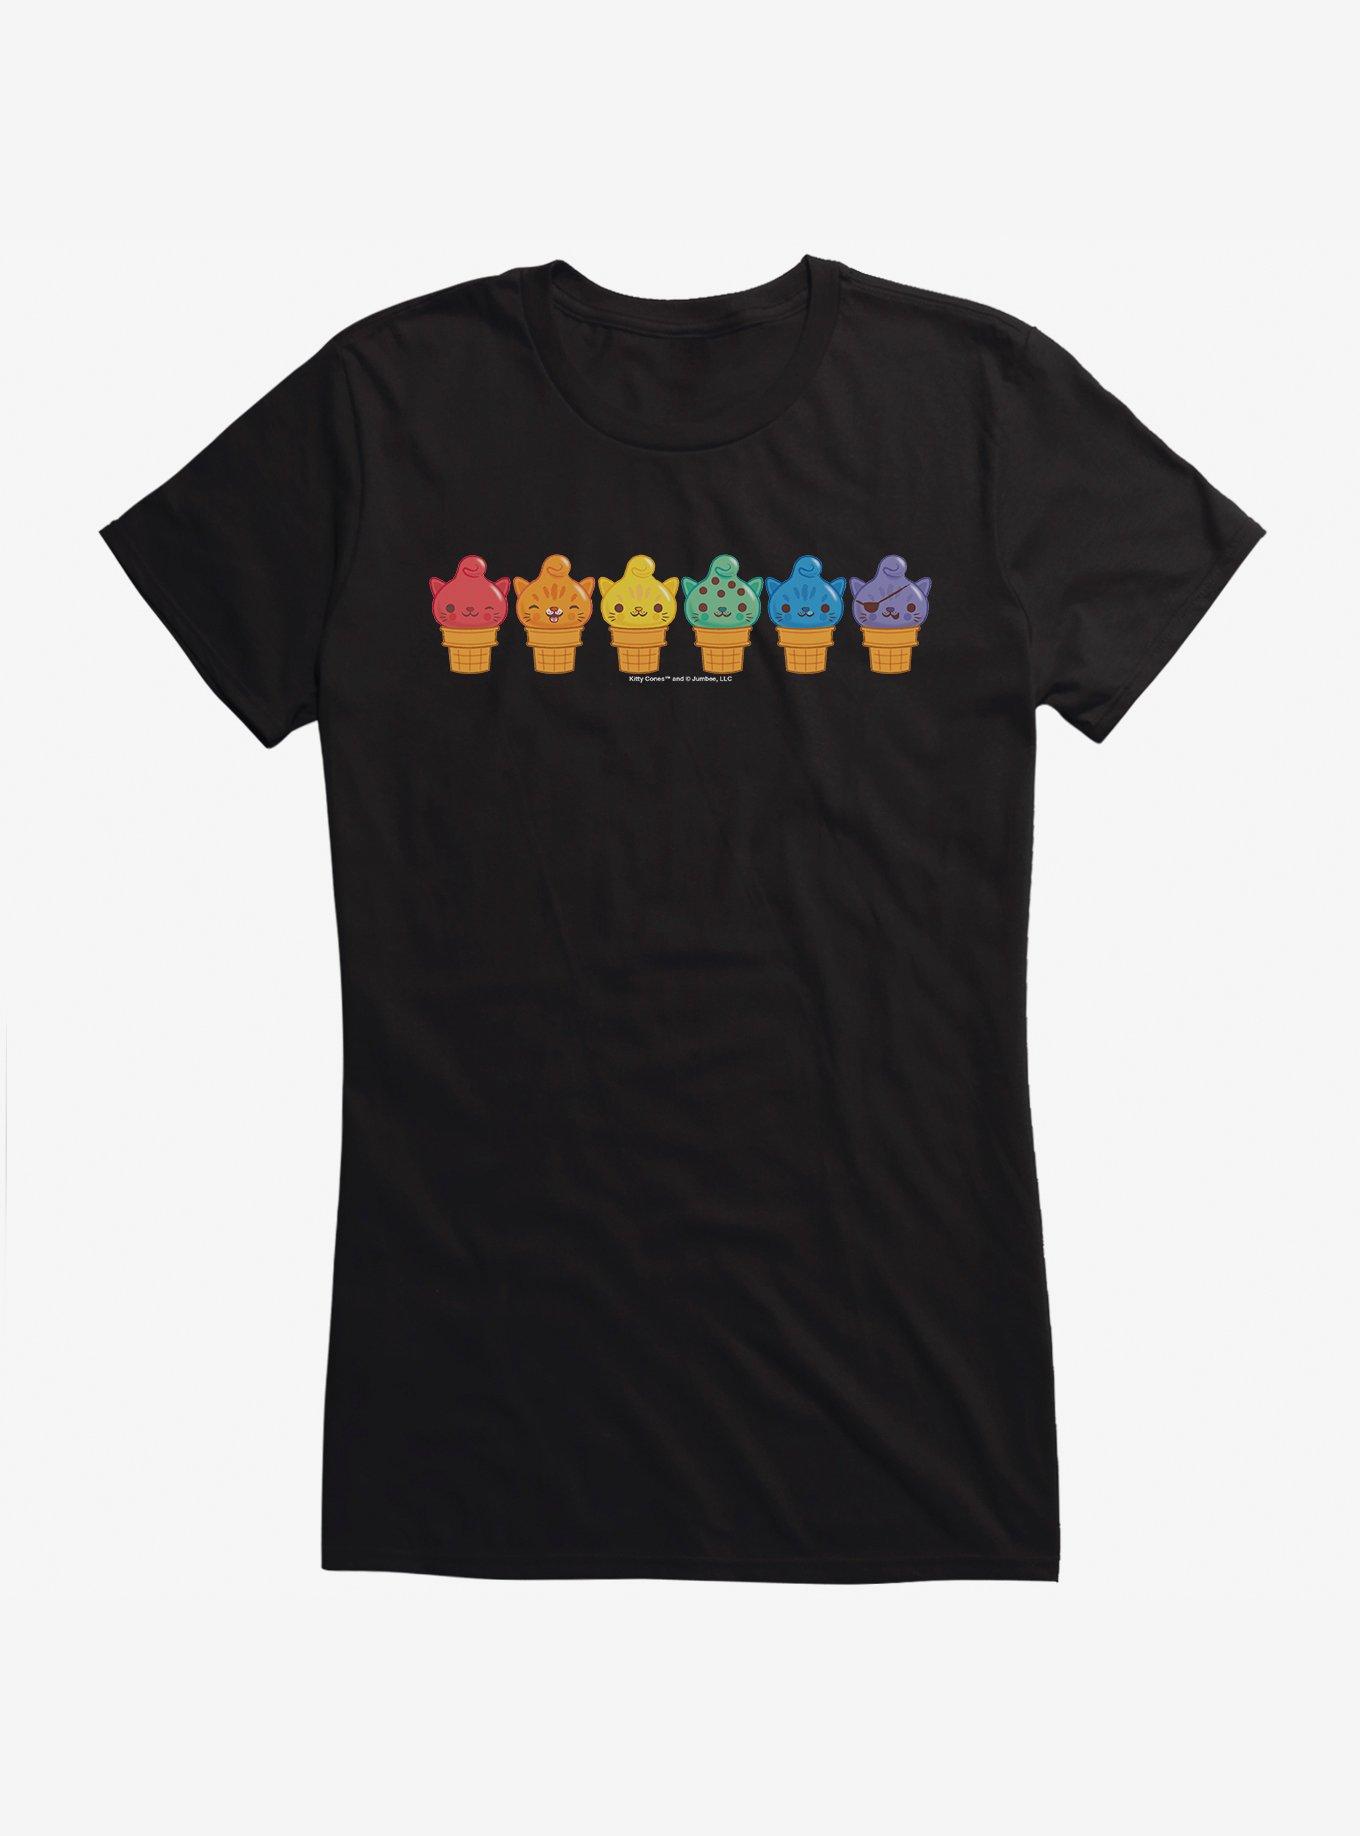 Kitty Cones Rainbow Ice Cream Girls T-Shirt | Hot Topic